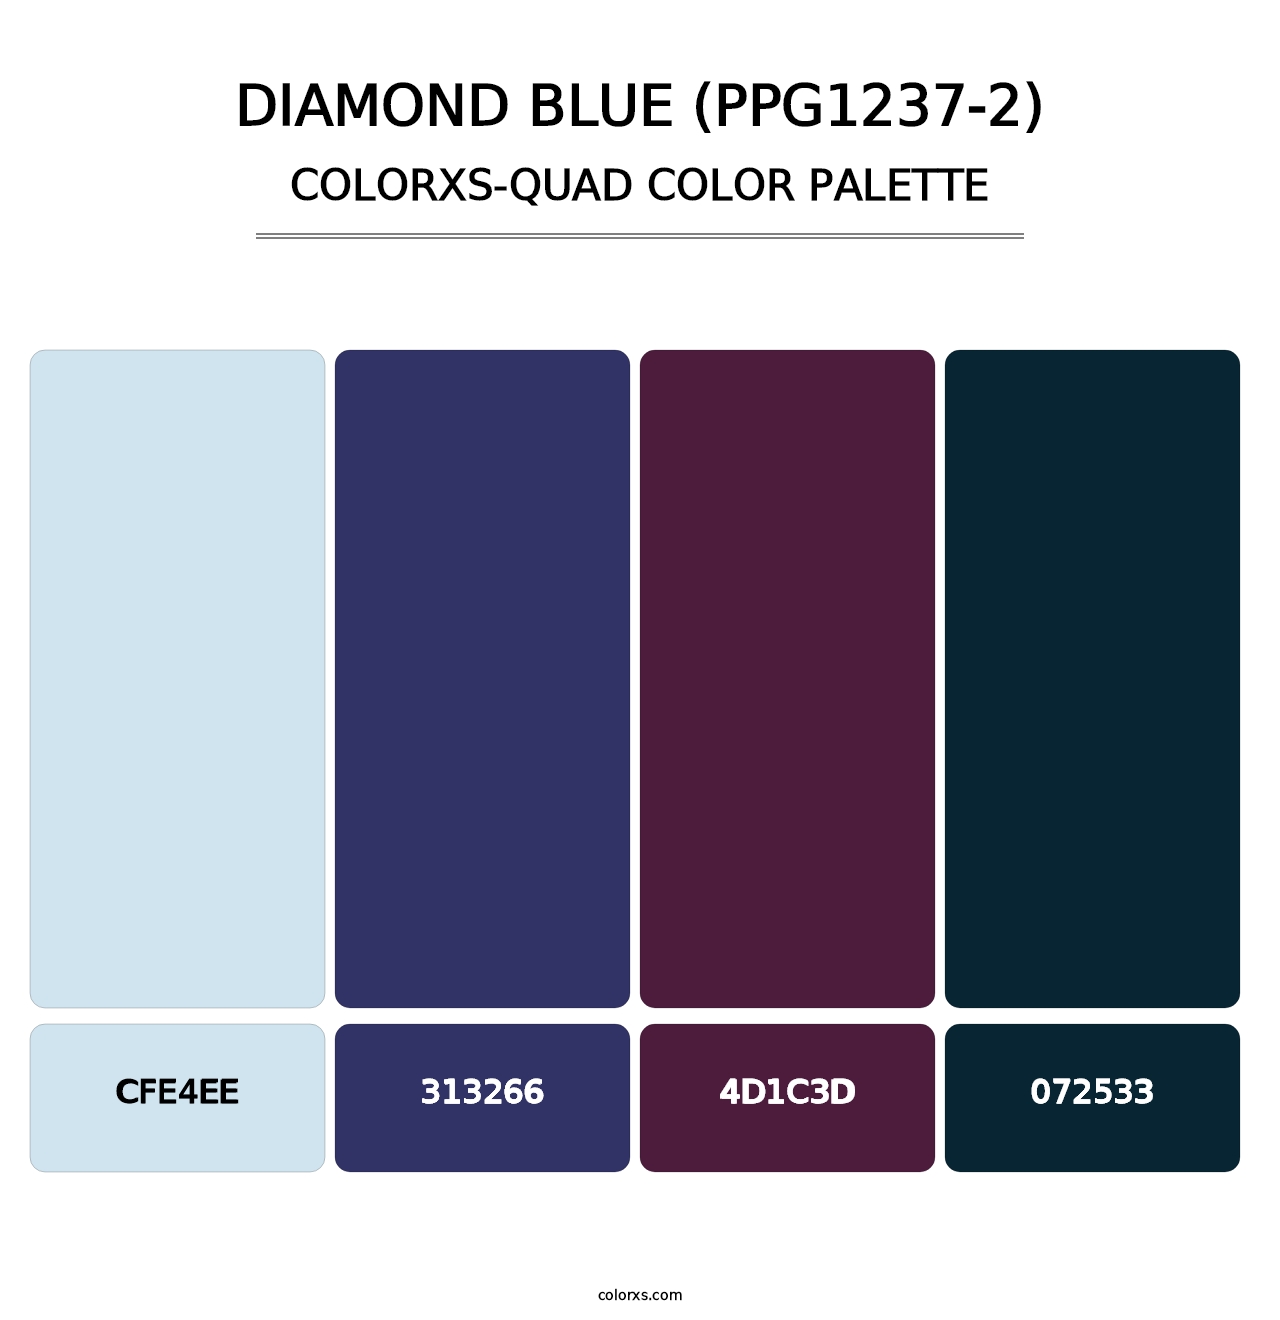 Diamond Blue (PPG1237-2) - Colorxs Quad Palette